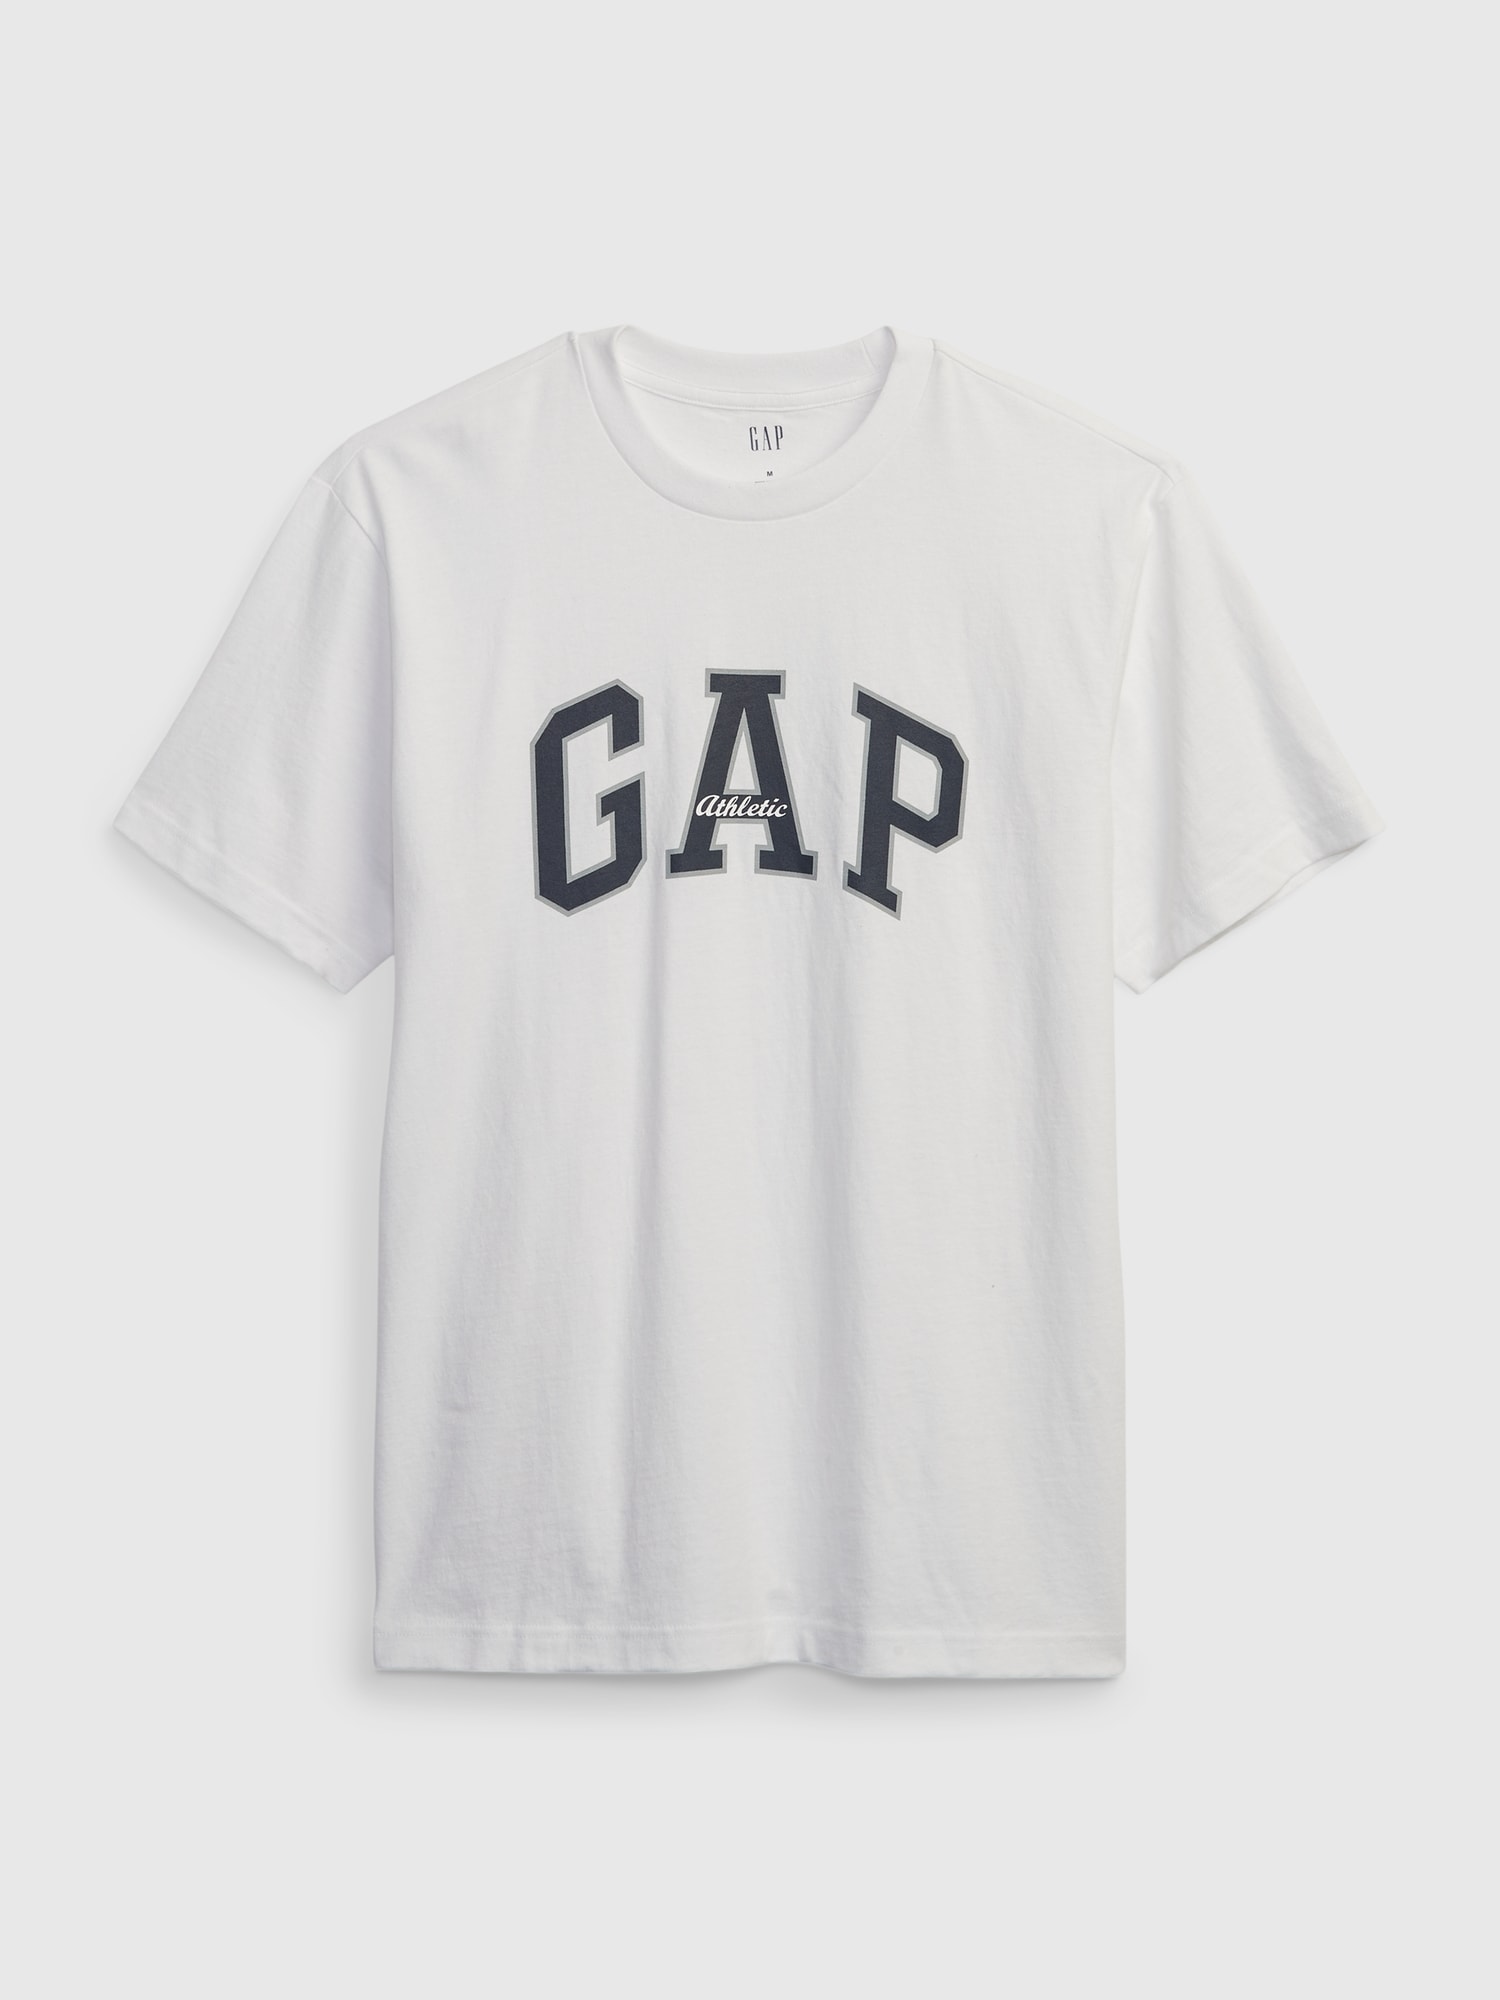 半袖Tシャツ (メンズ) | Gap公式オンラインストア